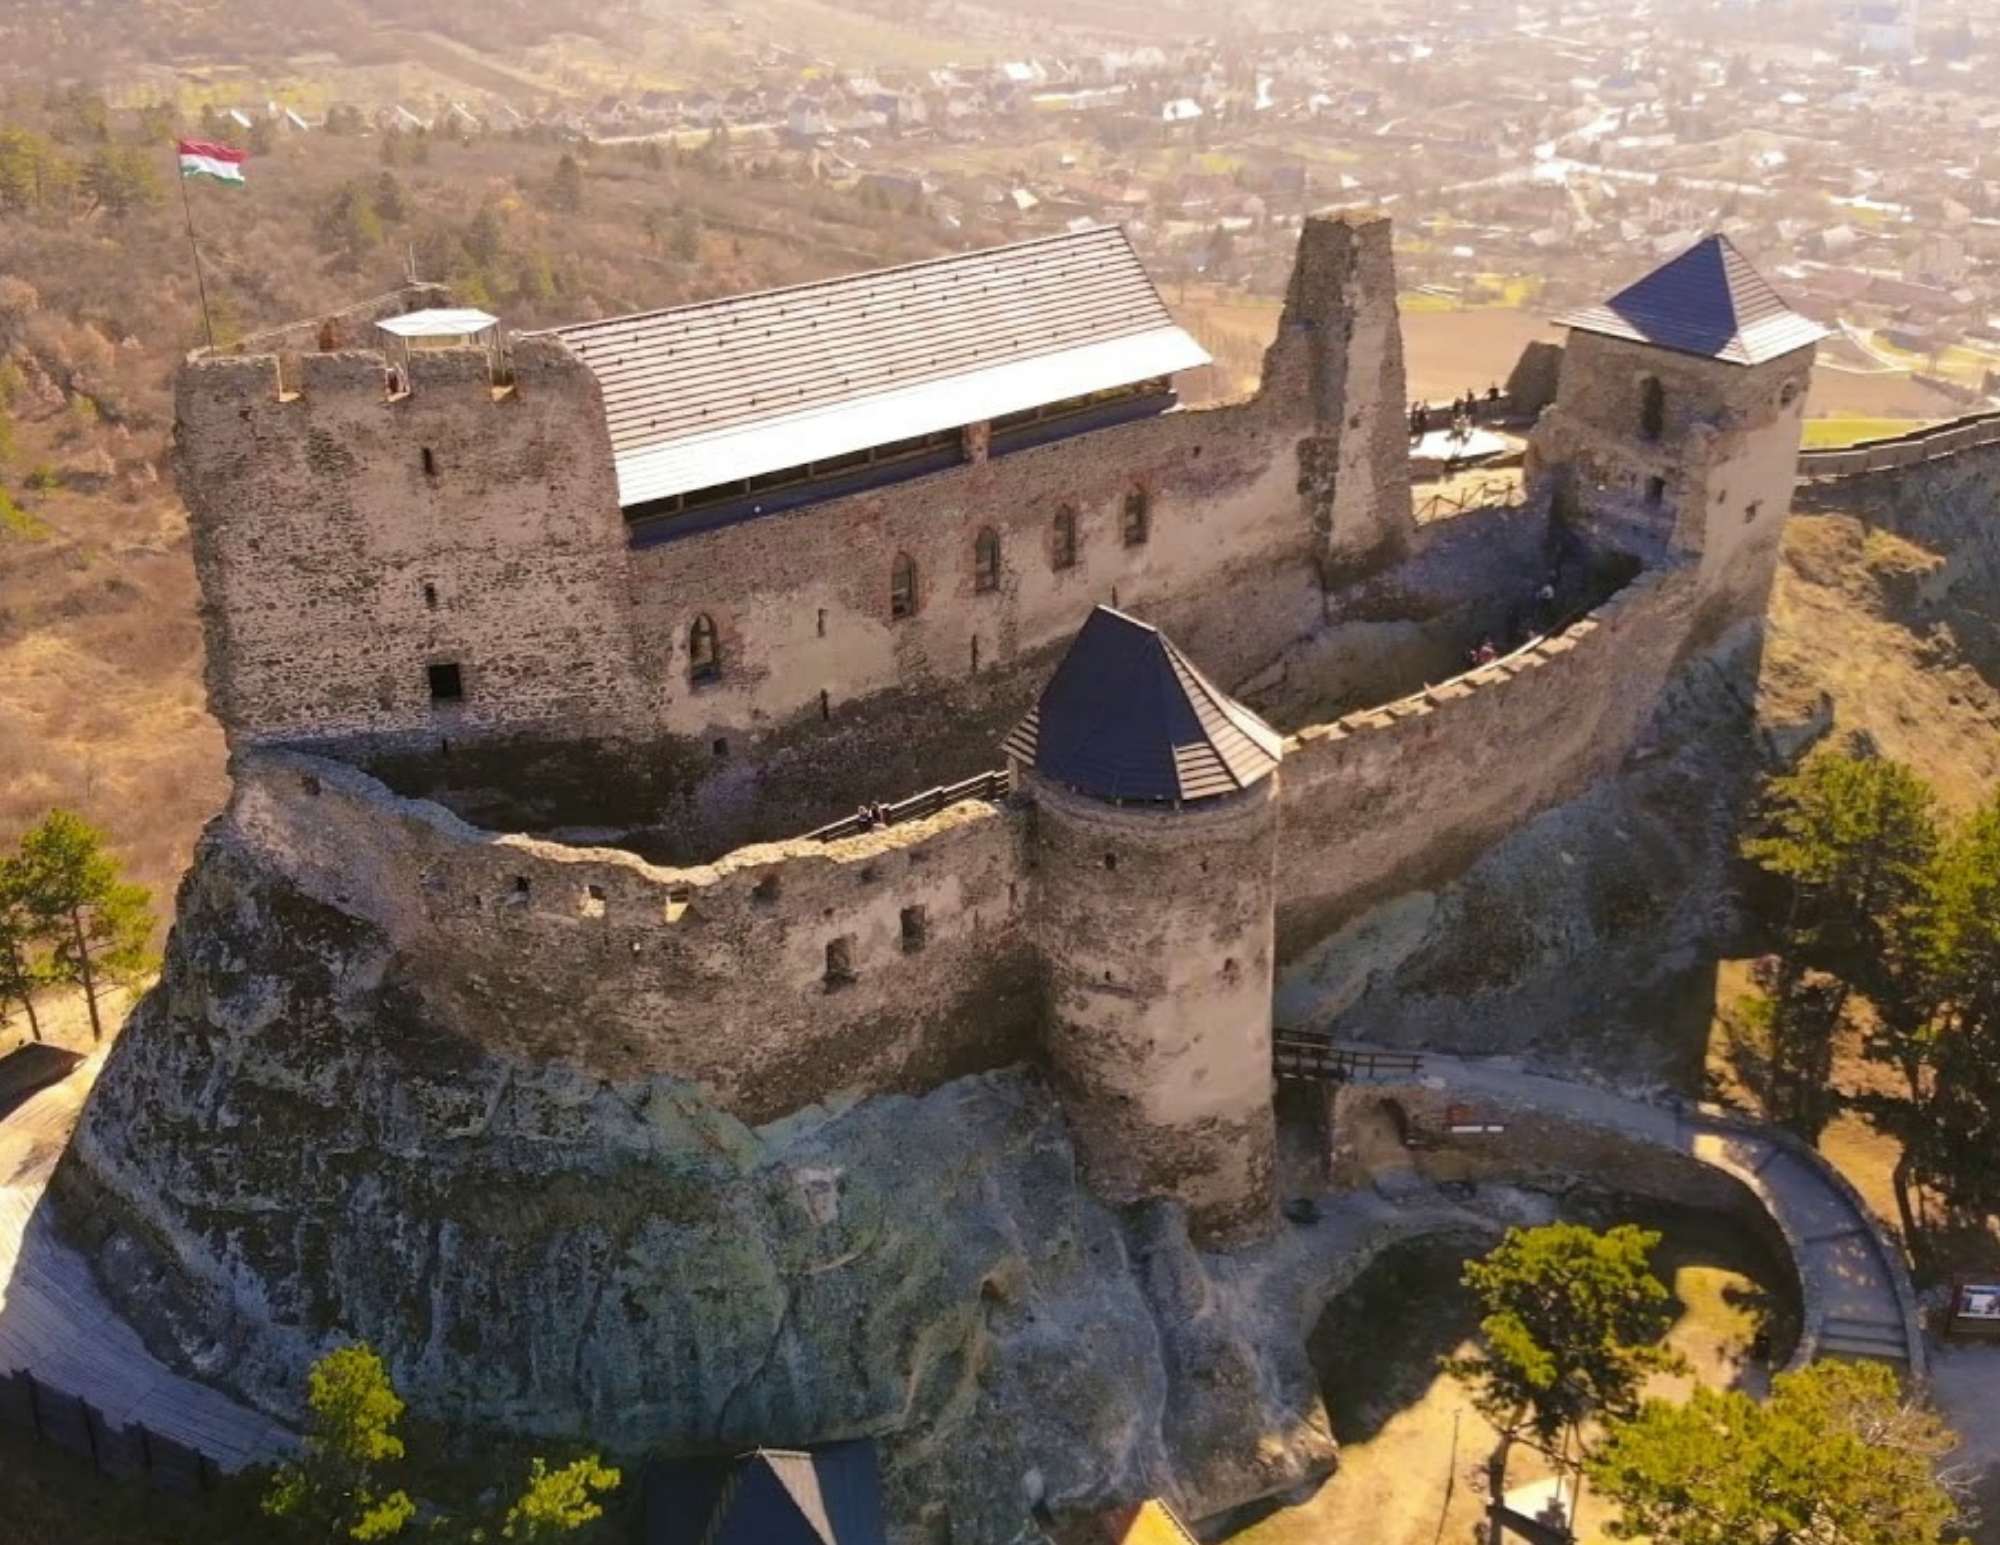 Avez-vous entendu parler des légendes mystérieuses de ces forteresses hongroises